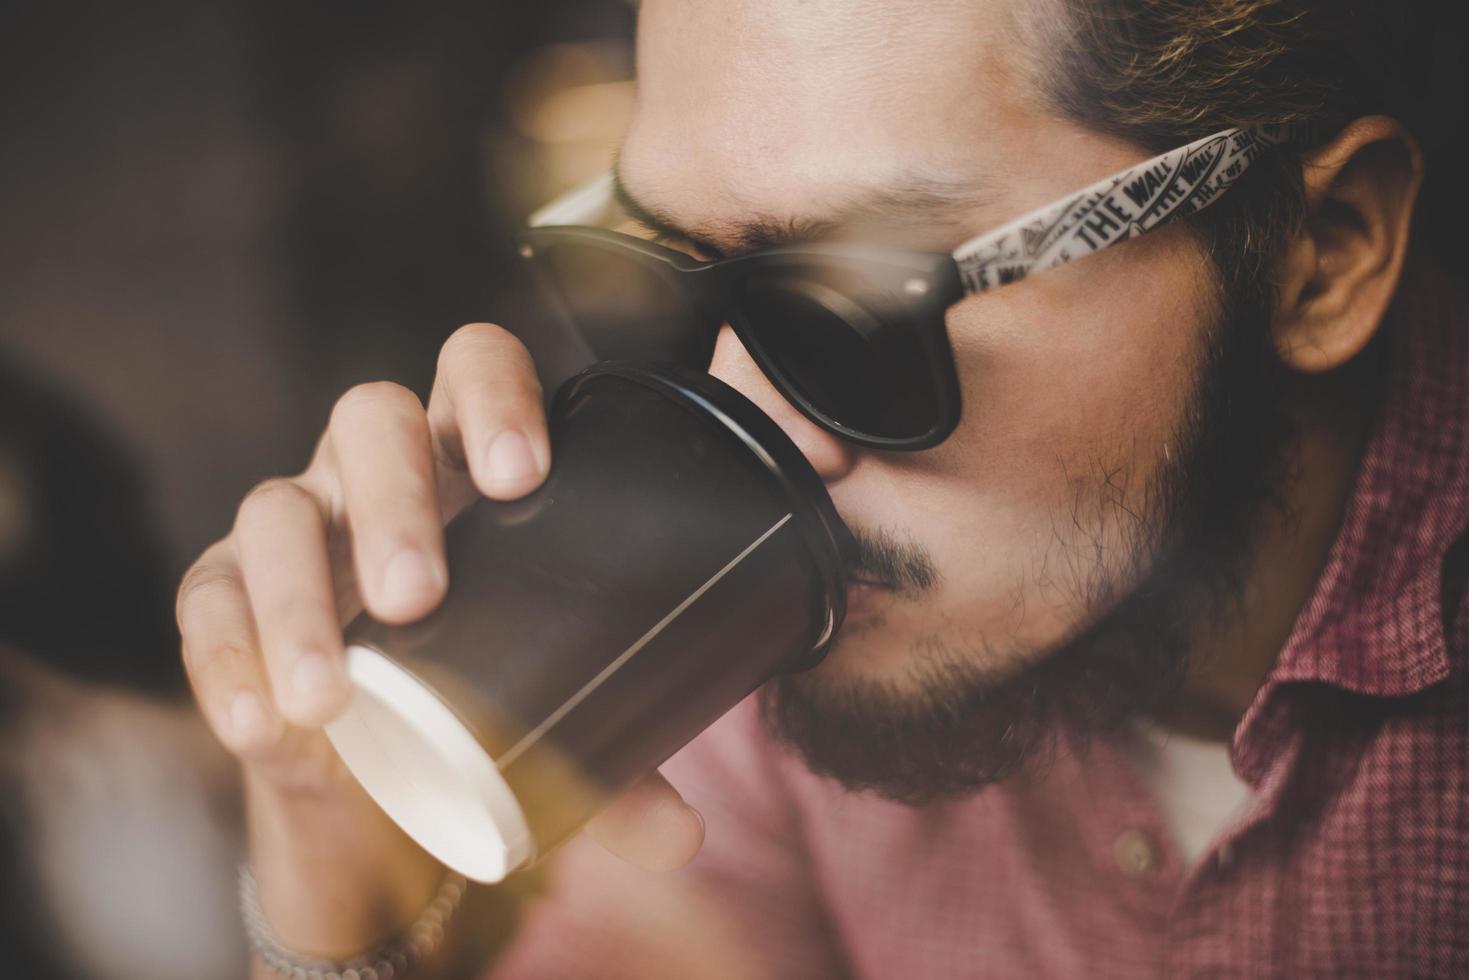 giovane uomo seduto in un bar e bere un caffè foto